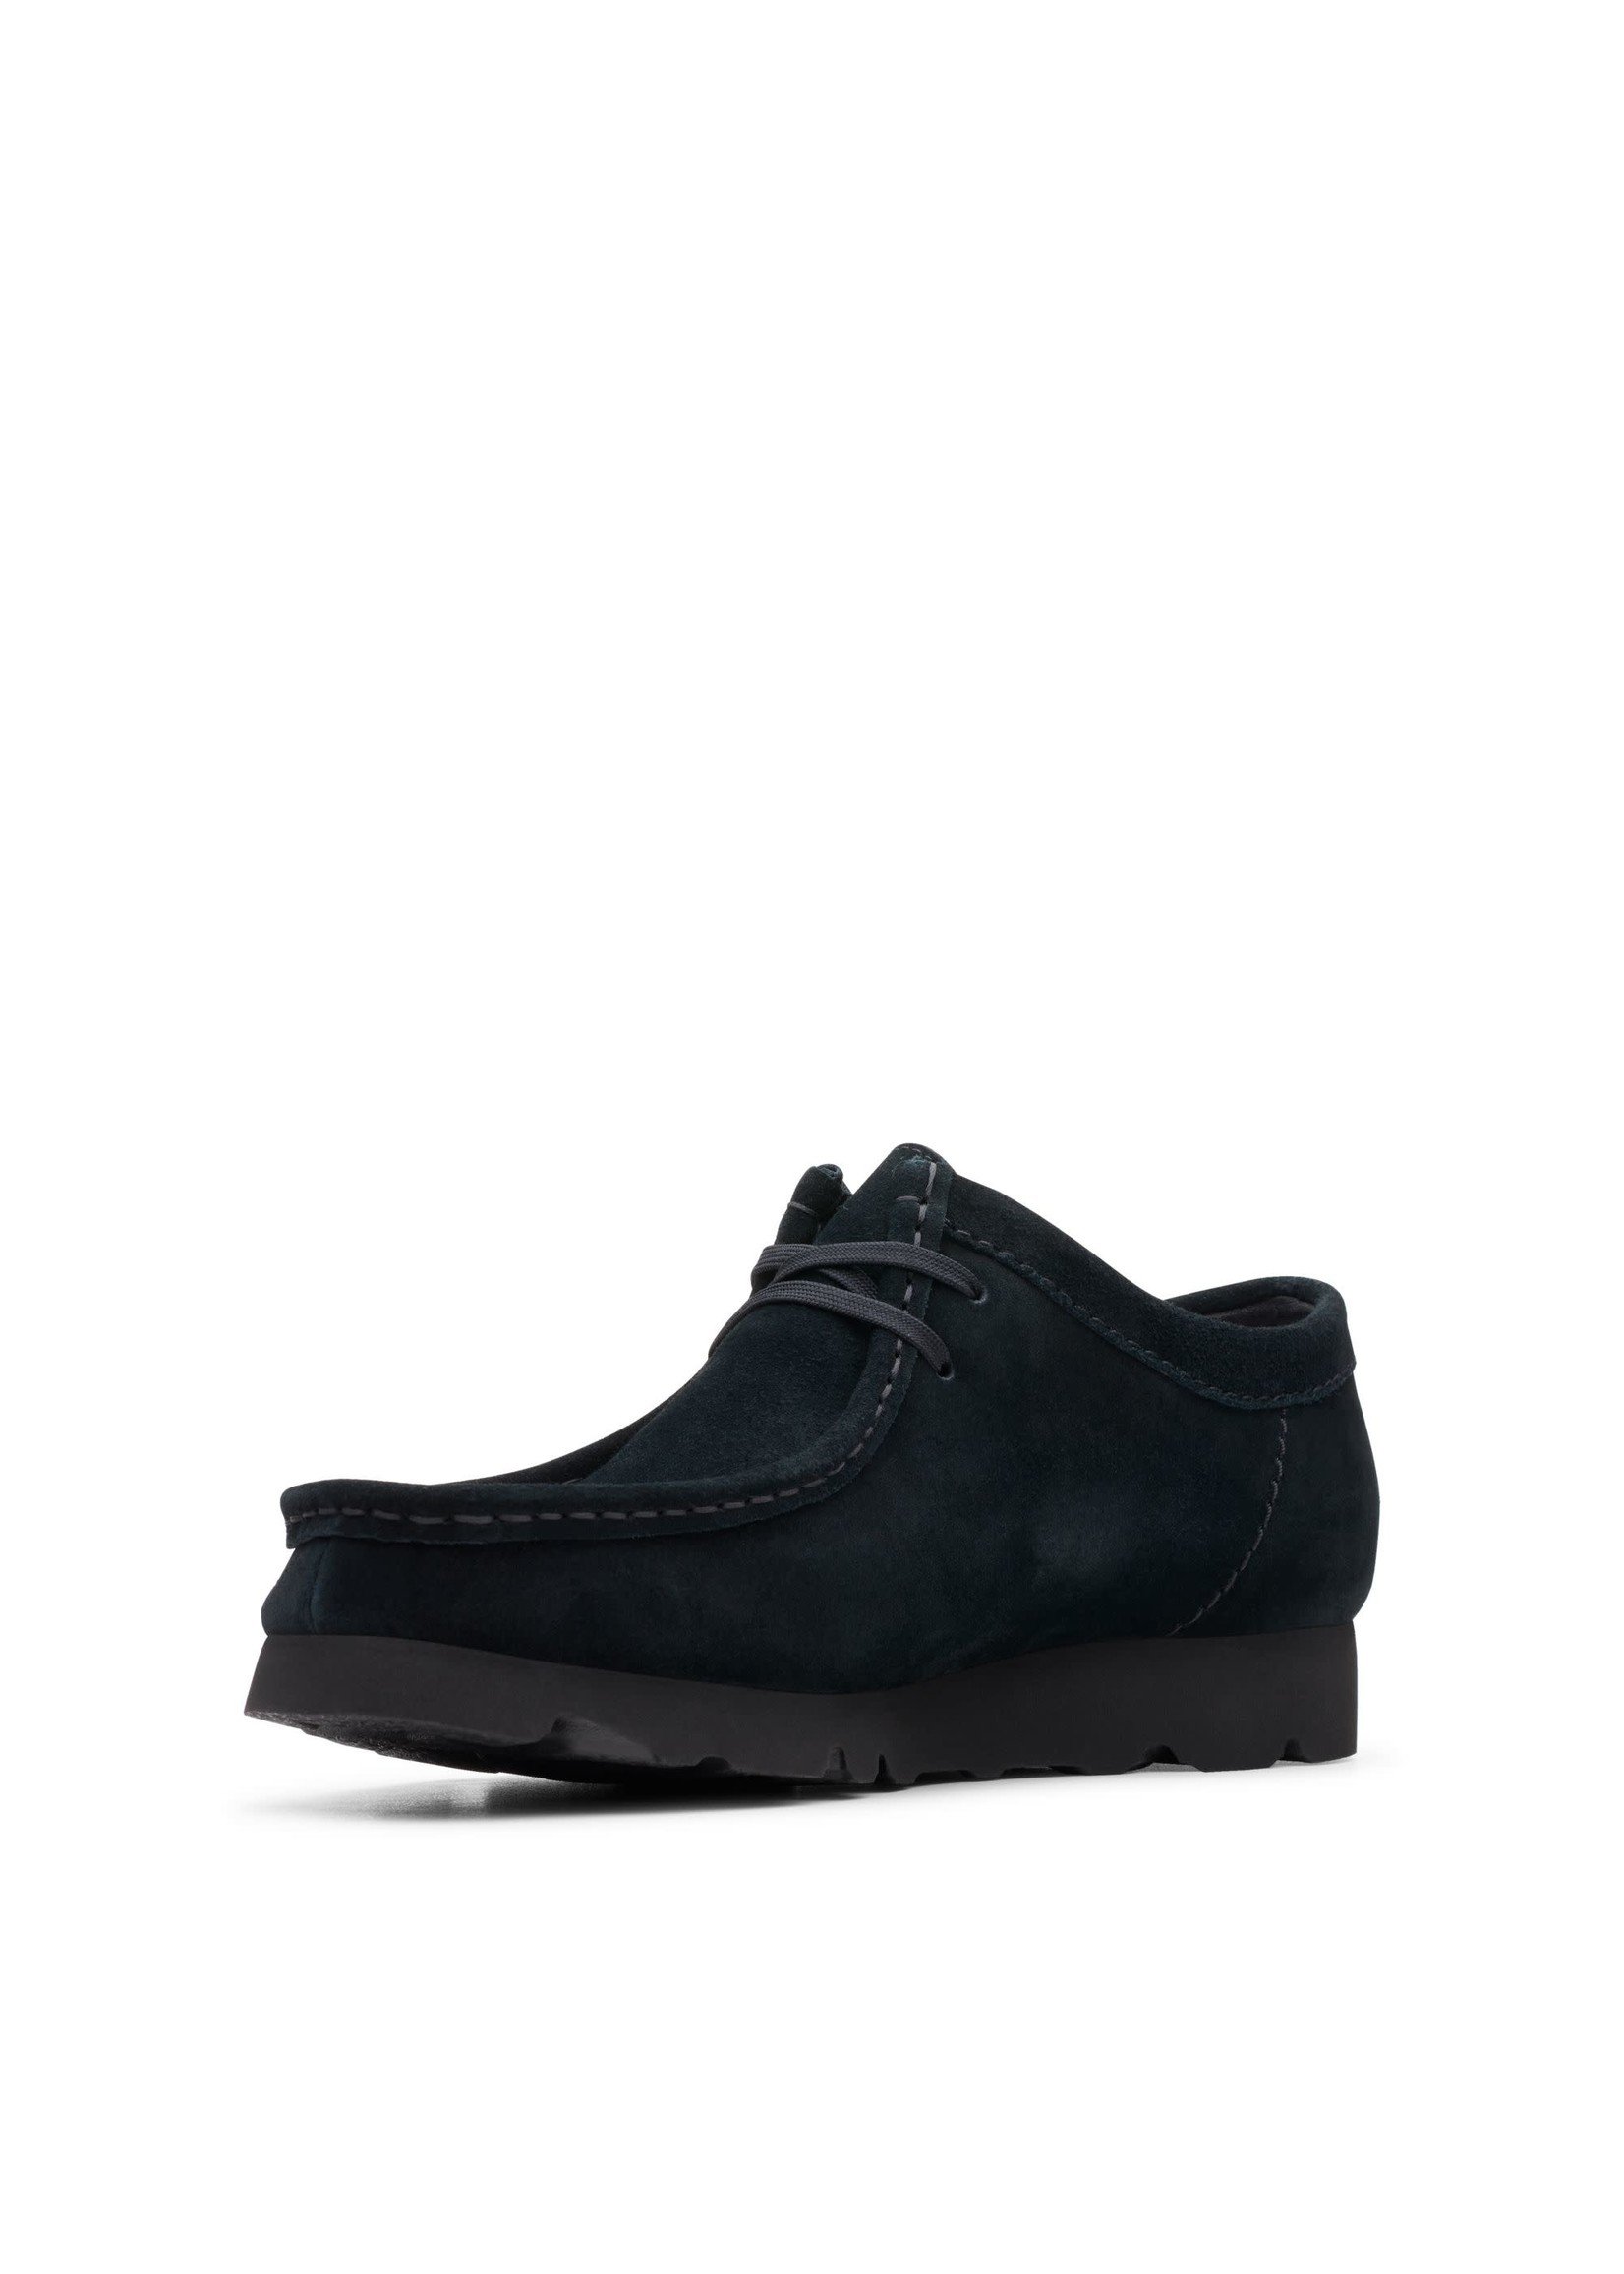 Clarks Men's Wallabee GTX Shoes, Black Suede - SHOE PLUS